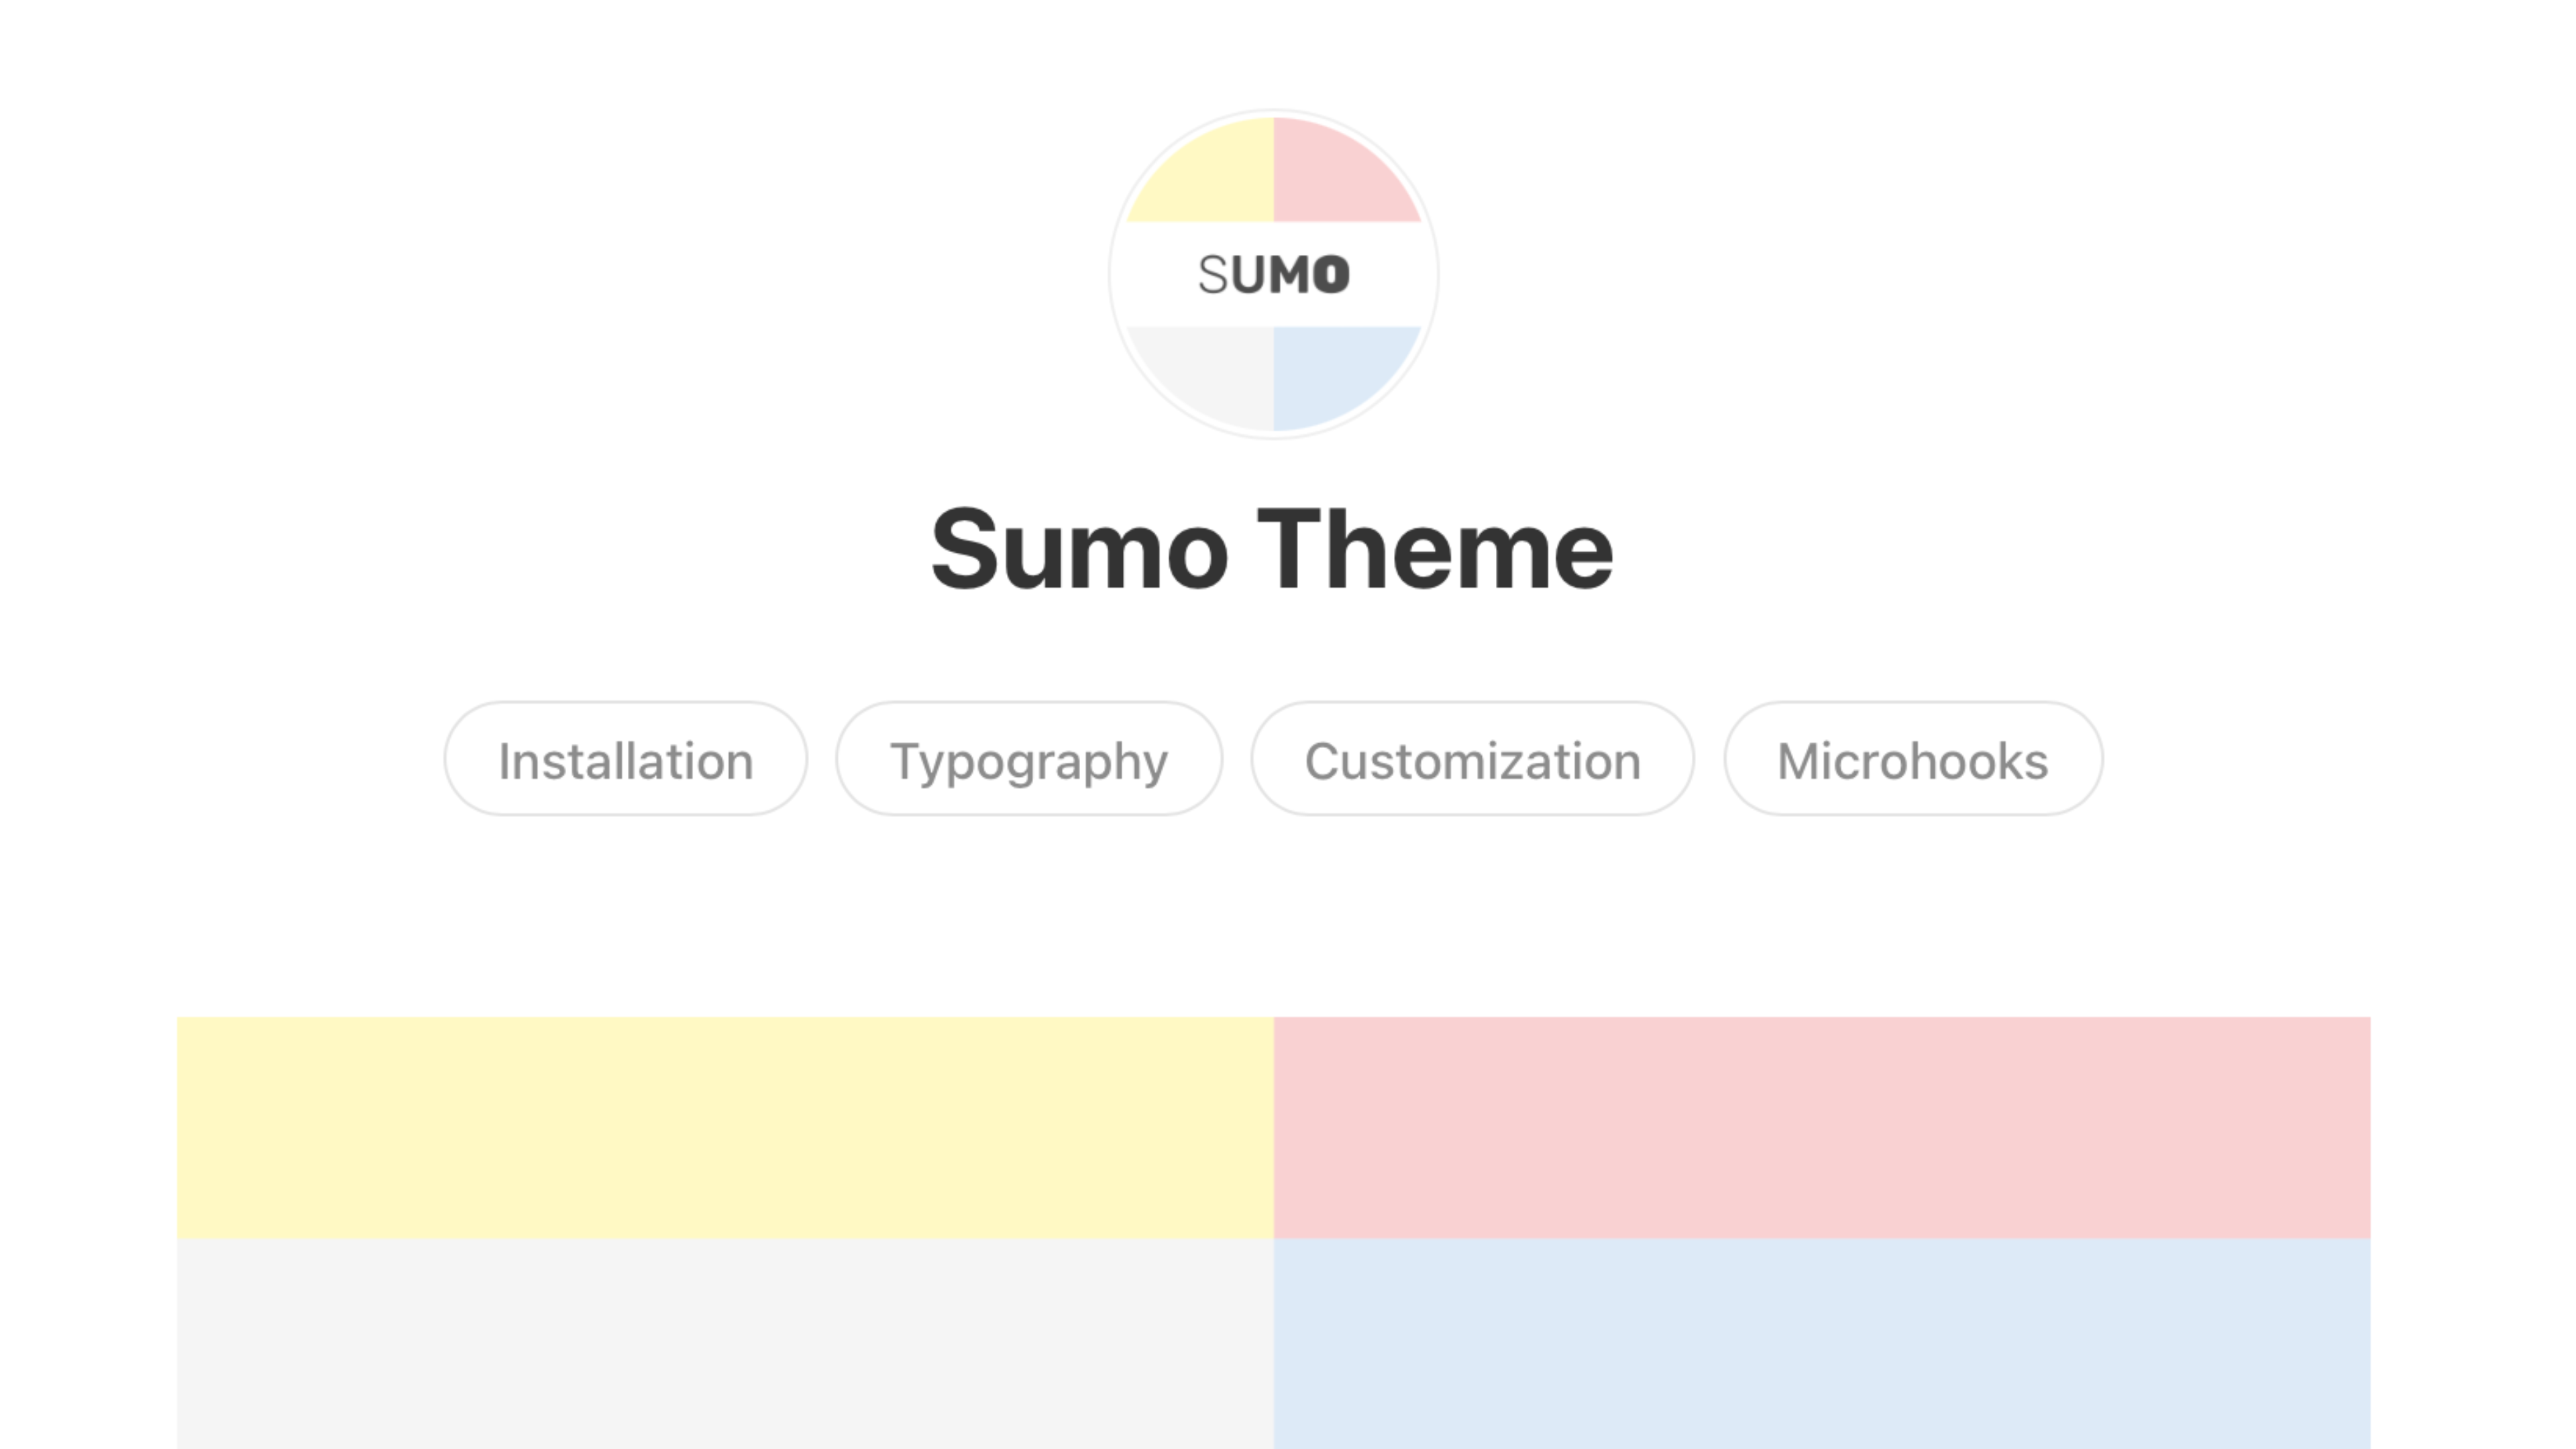 Sumo Theme